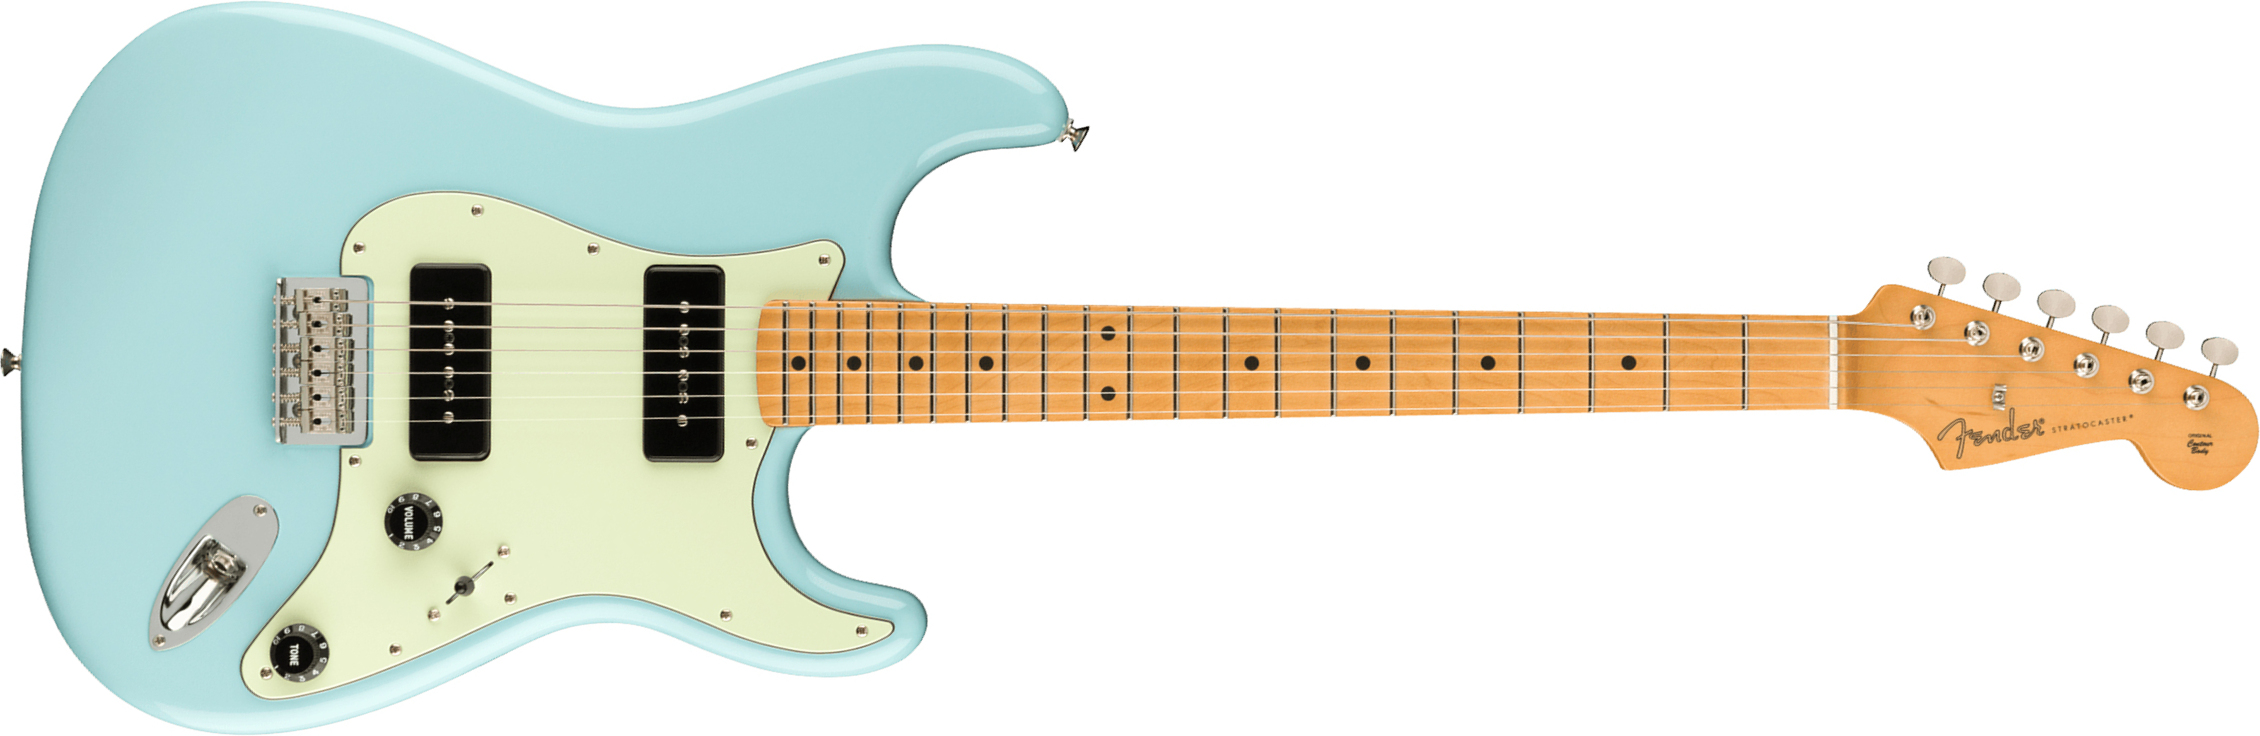 Fender Strat Noventa Mex Ss Ht Mn +housse - Daphne Blue - Guitarra eléctrica con forma de str. - Main picture